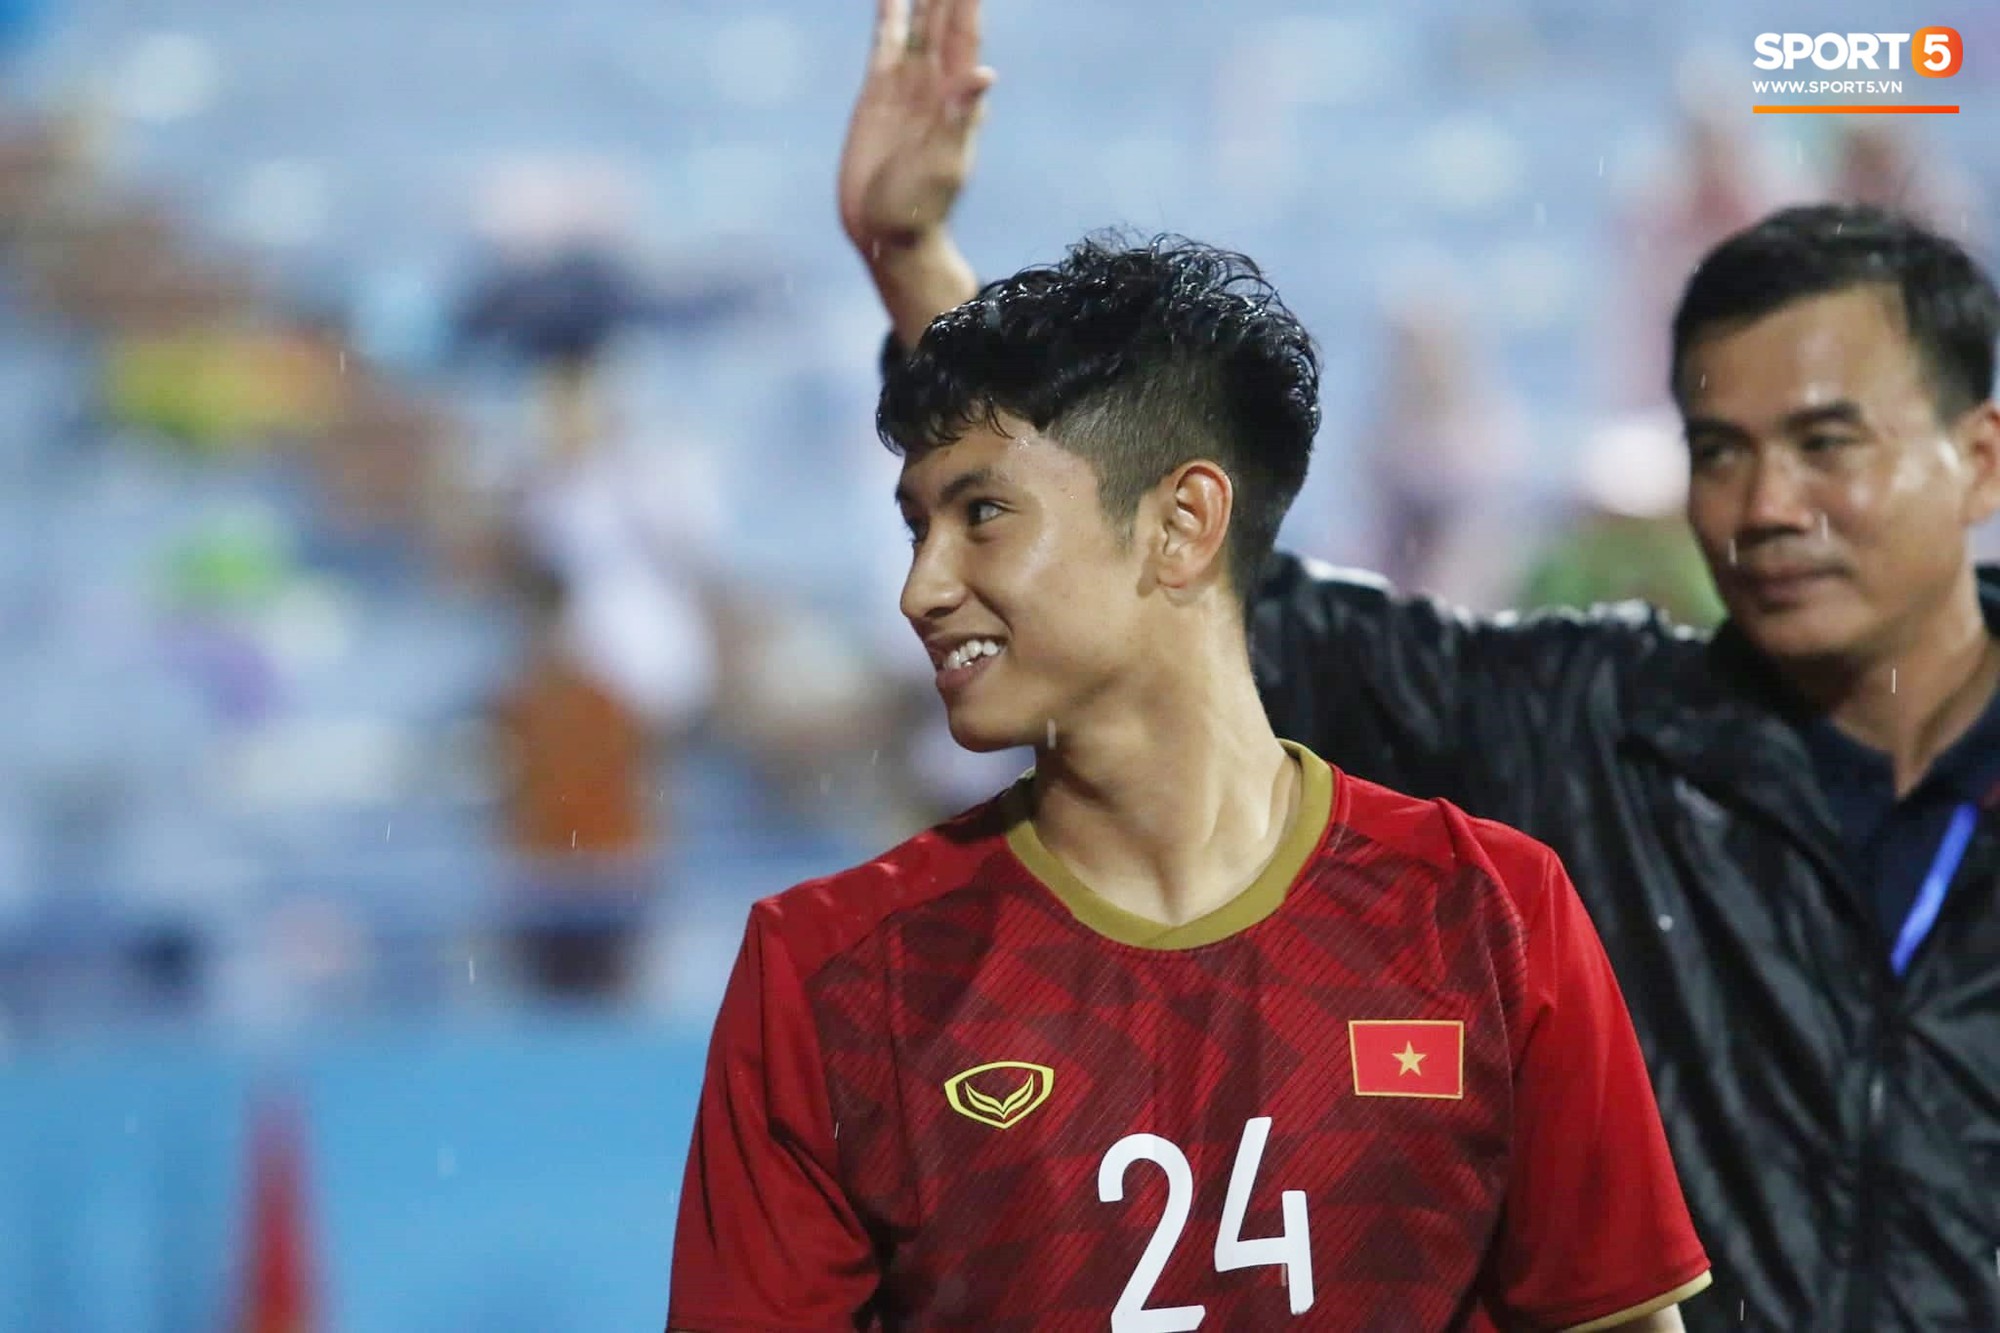 Hình ảnh cảm động: U23 Việt Nam đội mưa đi khắp khán đài cảm ơn người hâm mộ sau trận thắng U23 Myanmar - Ảnh 7.